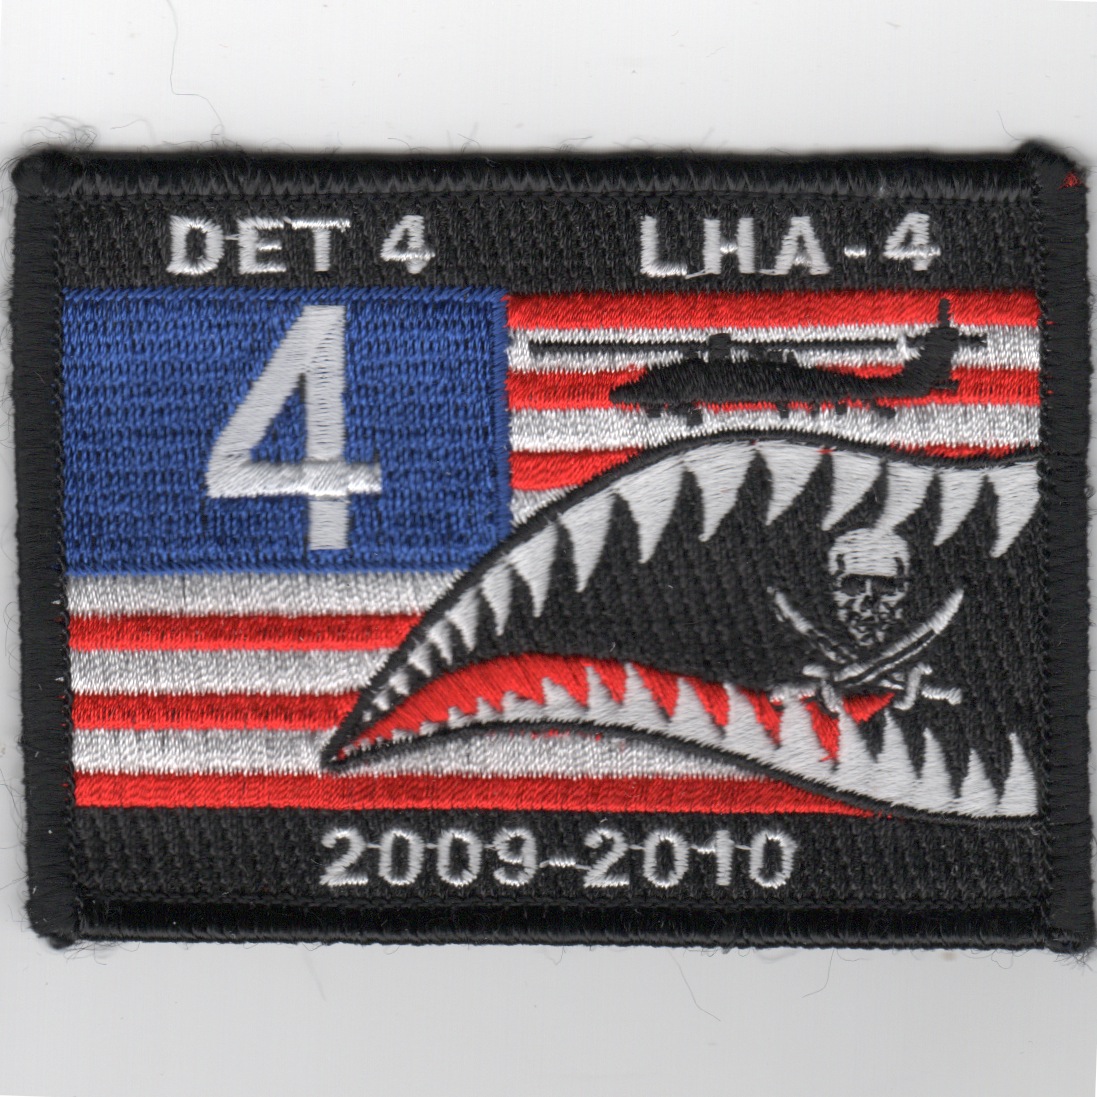 LHA-4 Det-4 2009-2010 Flag Patch